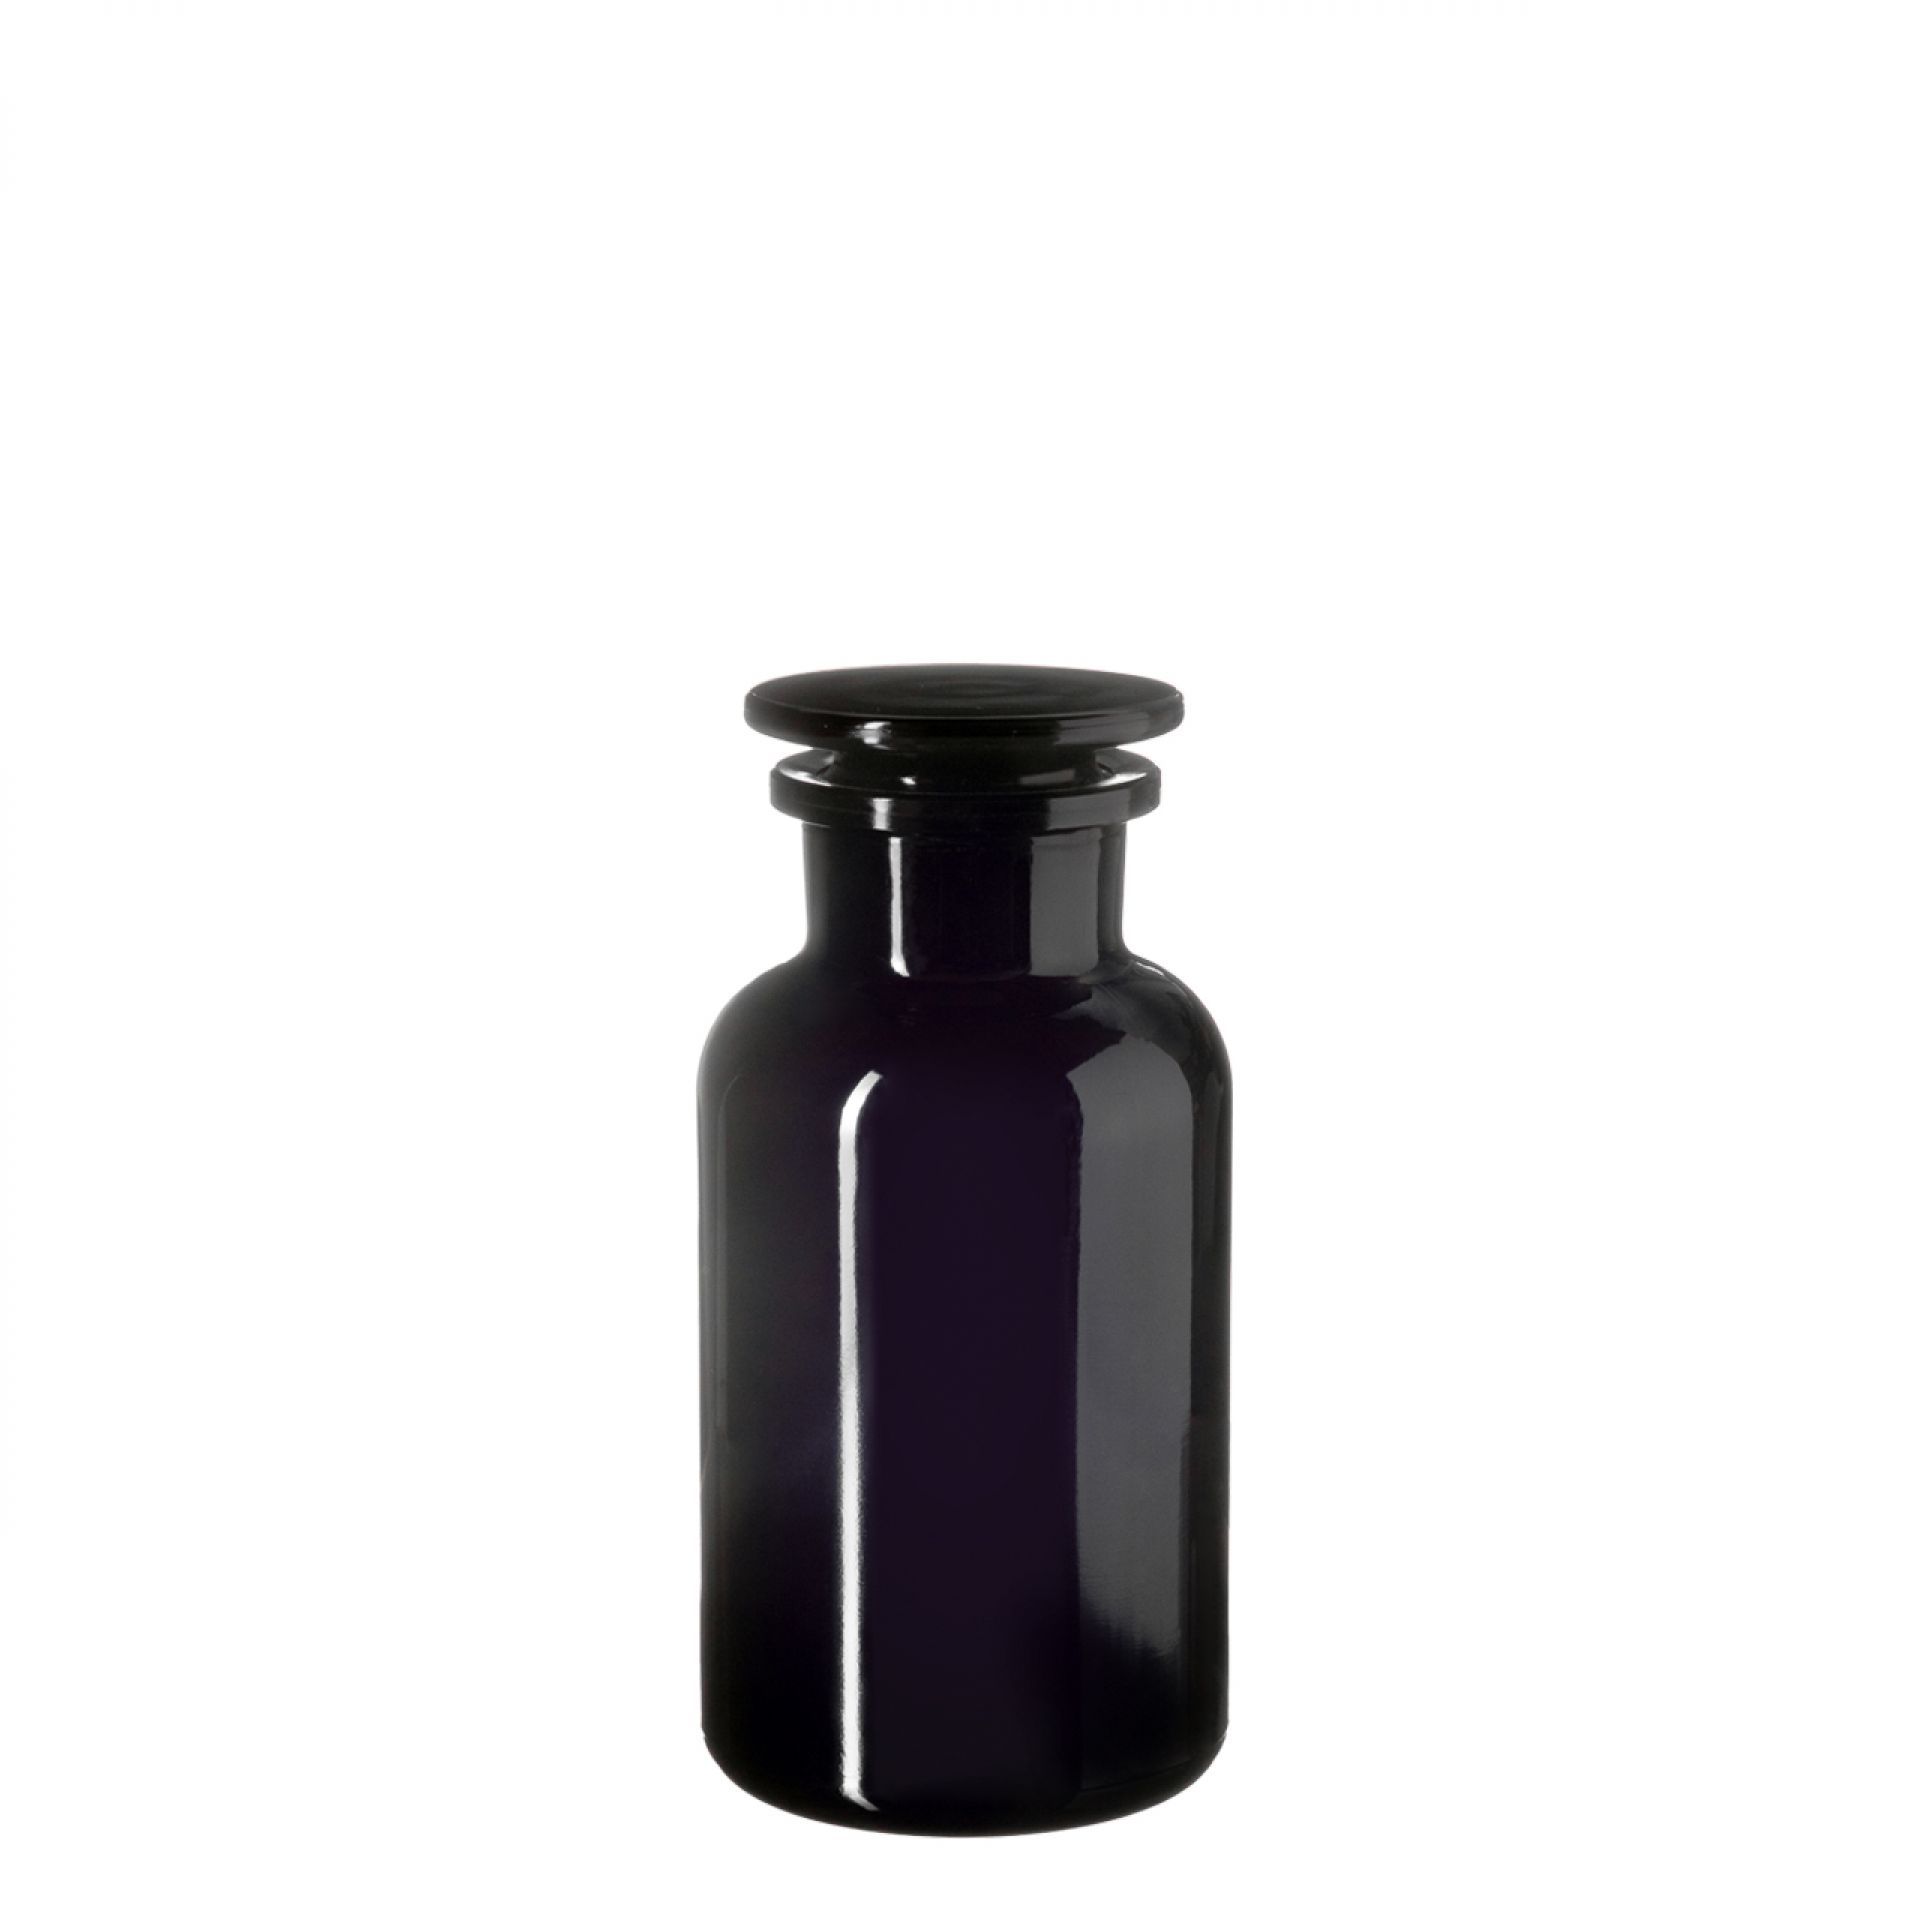 Apothecary jar Libra 500ml, glass stopper, Miron